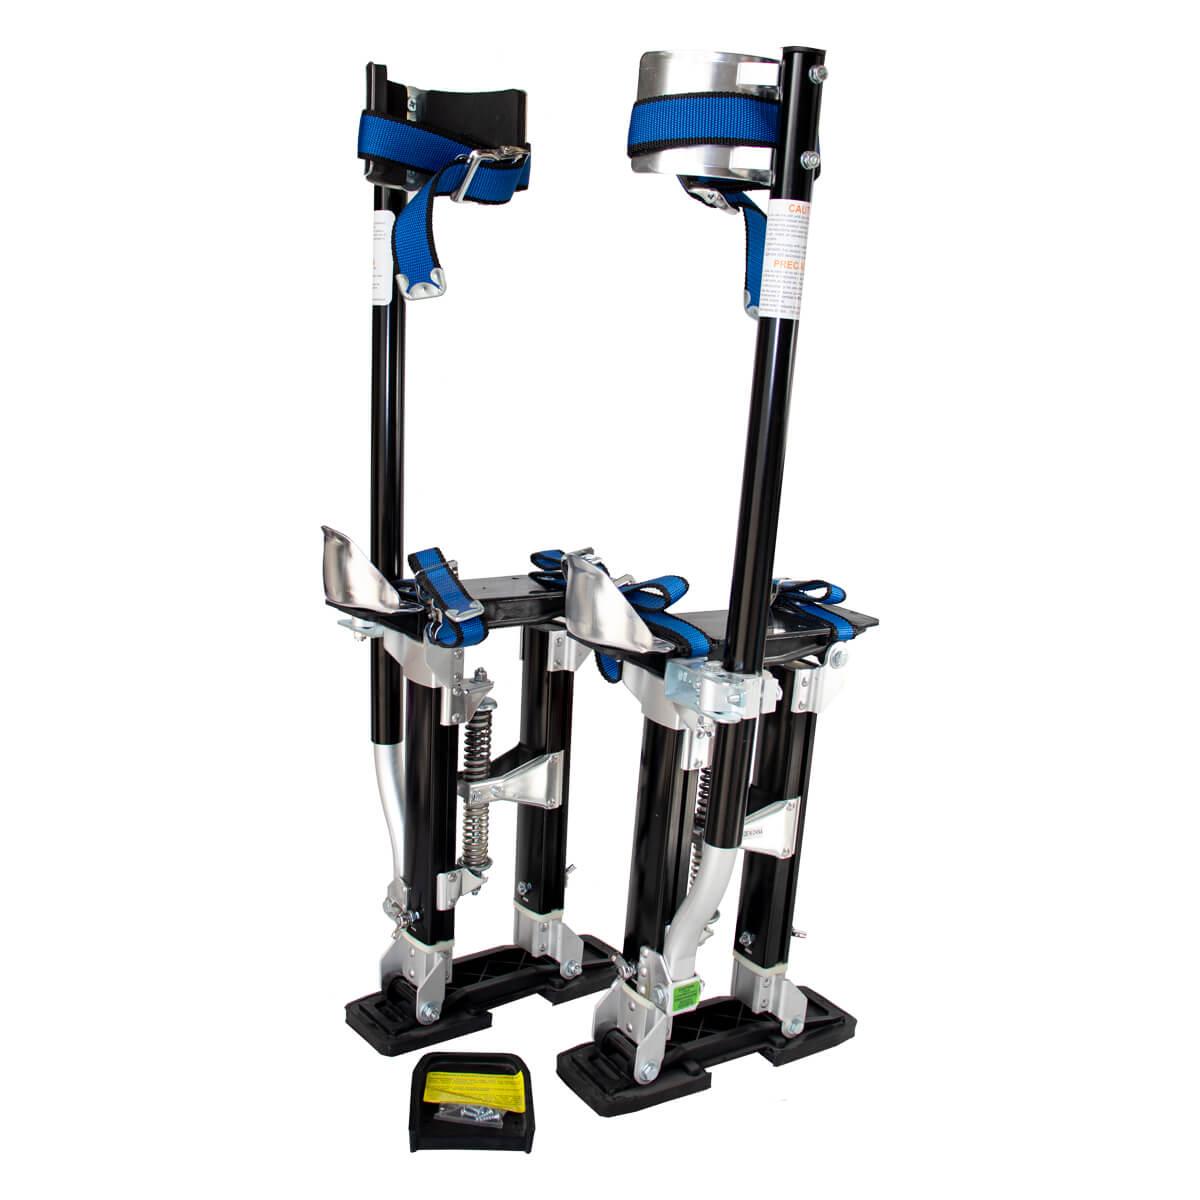 Stilts Adjustable Large 600-1000mm